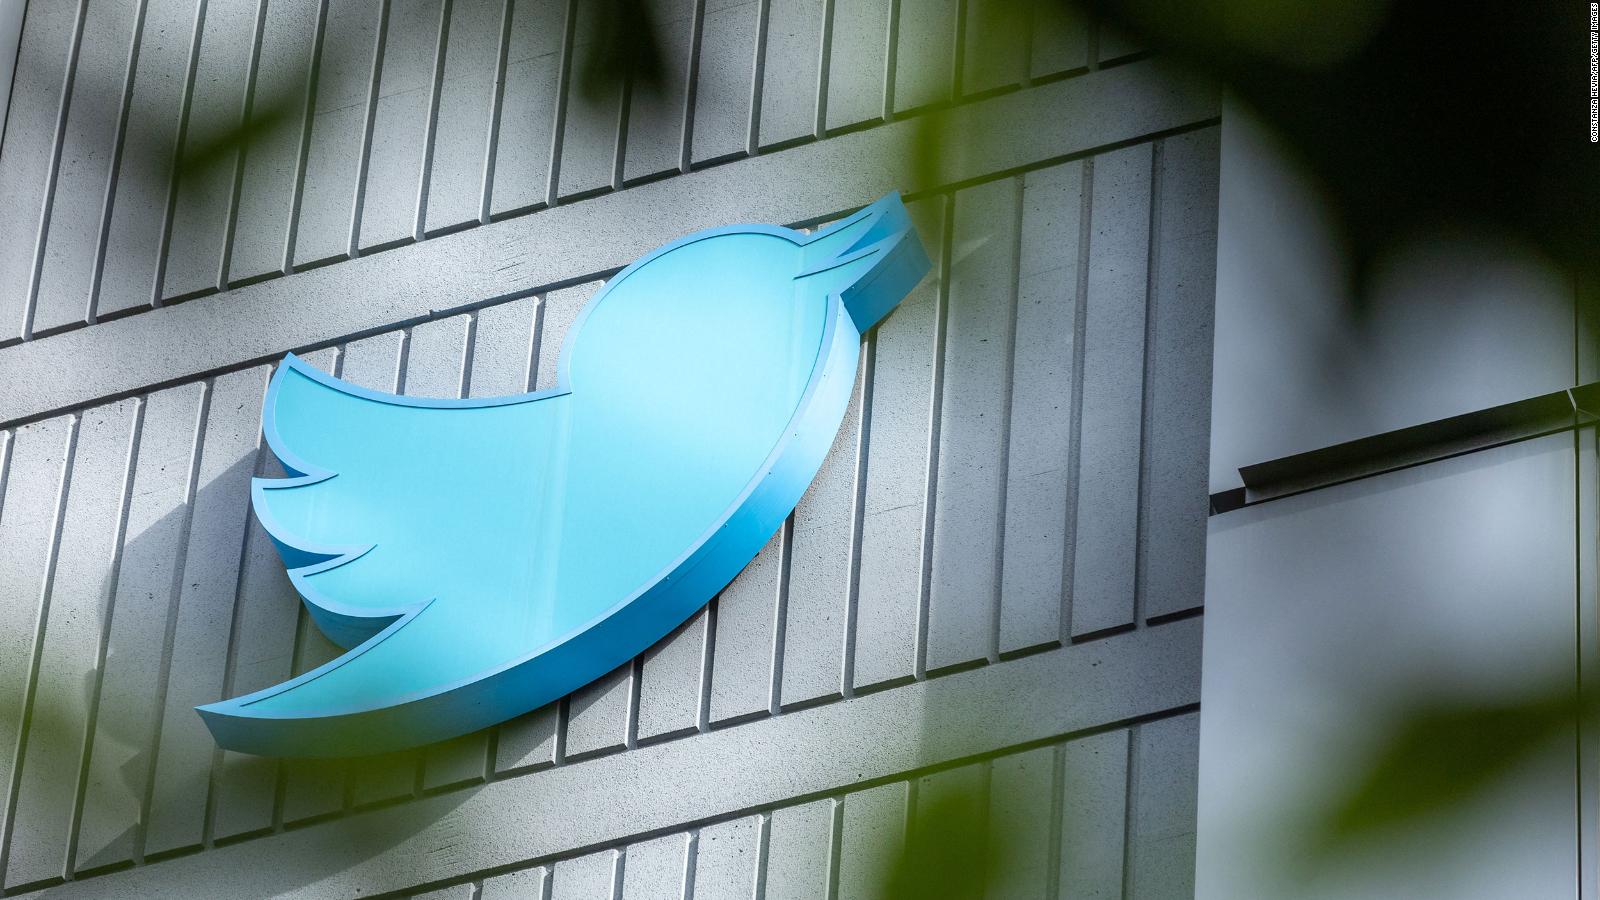 El muro “Para ti” de Twitter estará restringido a cuentas verificadas